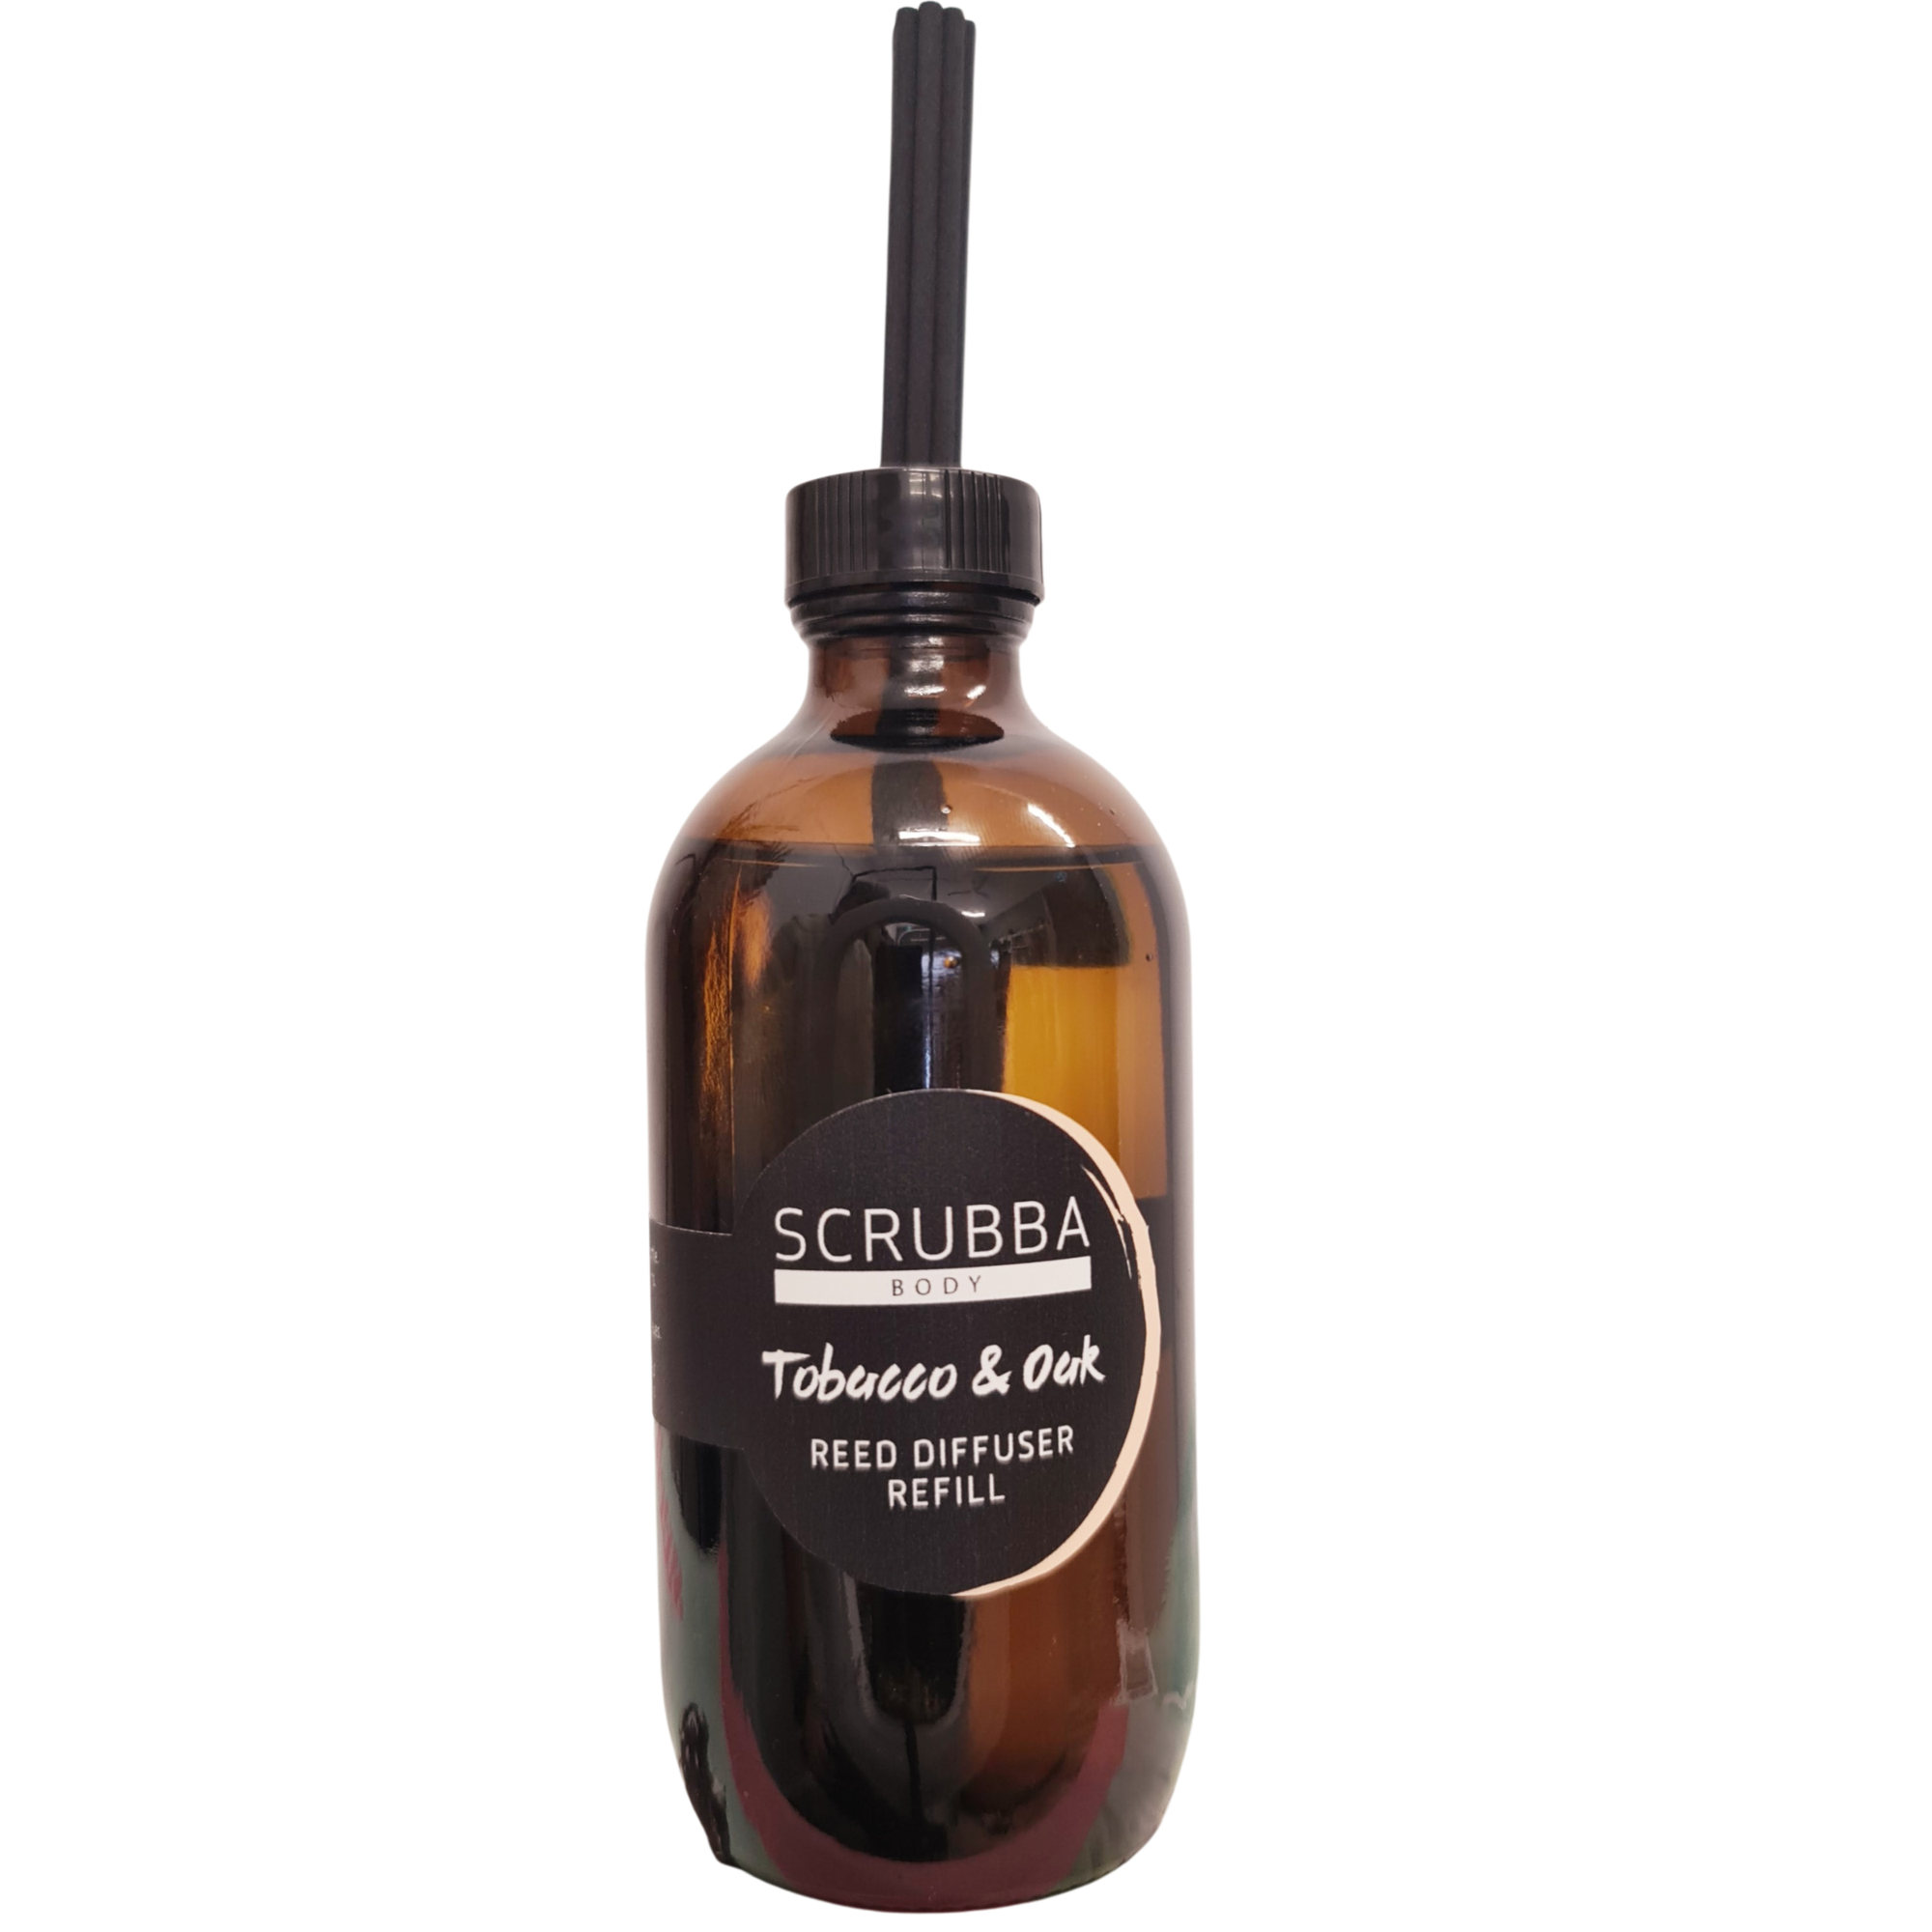 Scrubba Body Home Fragrances Tobacco & Oak Reed Diffuser Refill